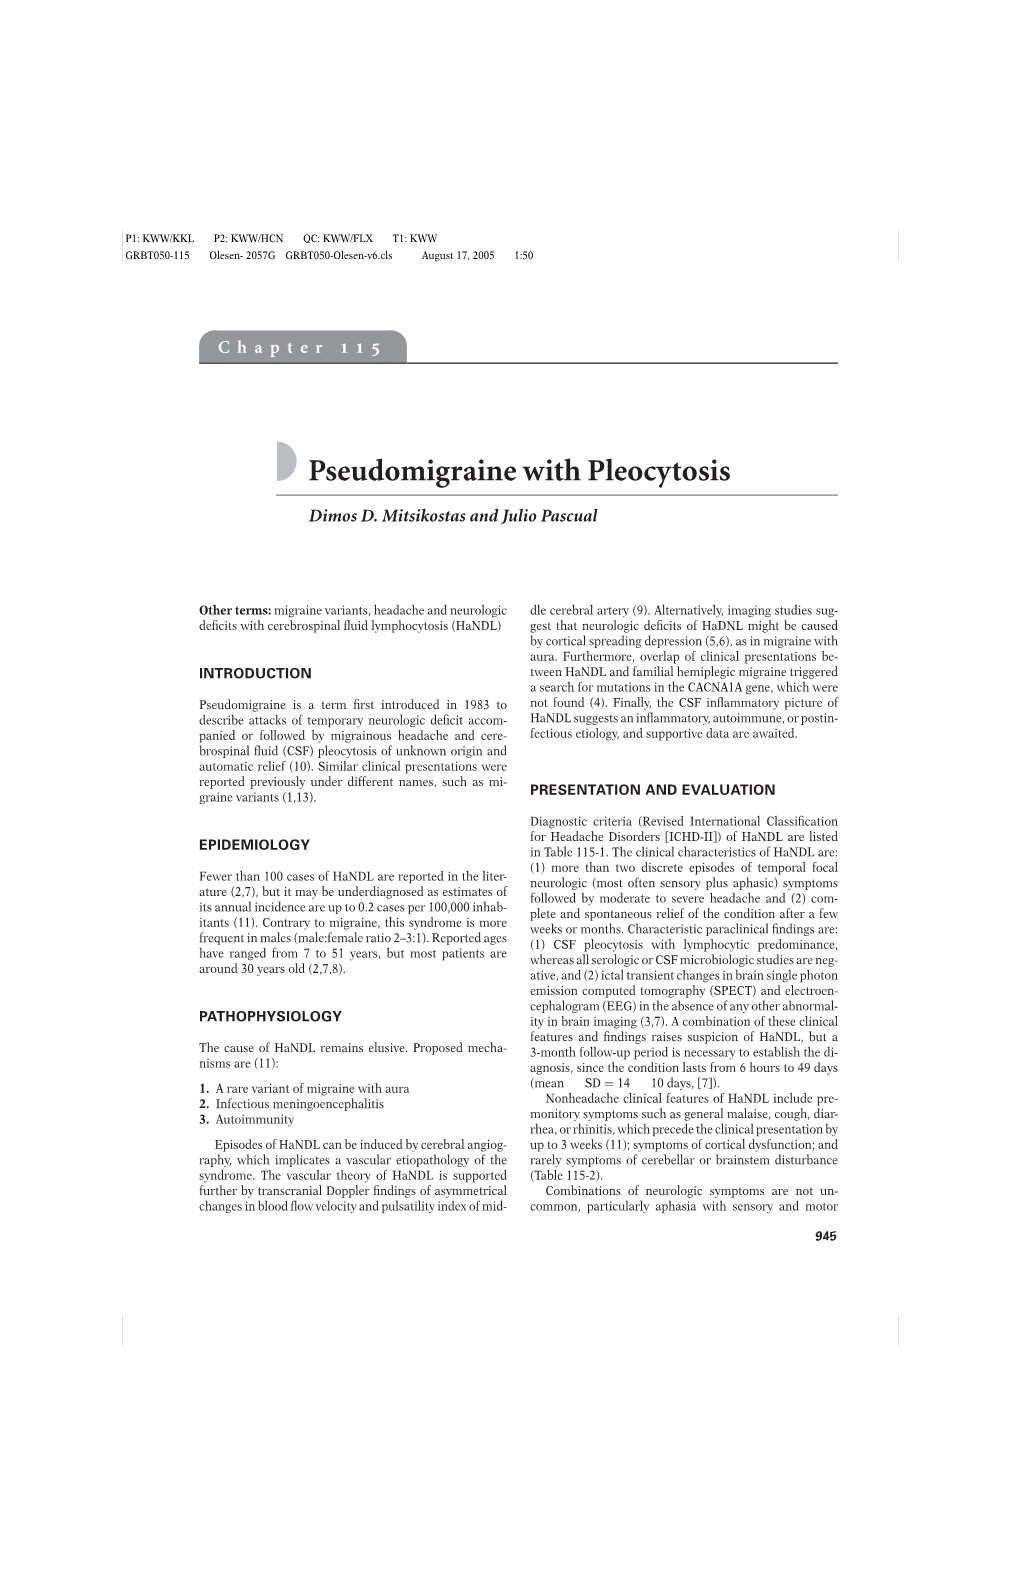 Pseudomigraine with Pleocytosis